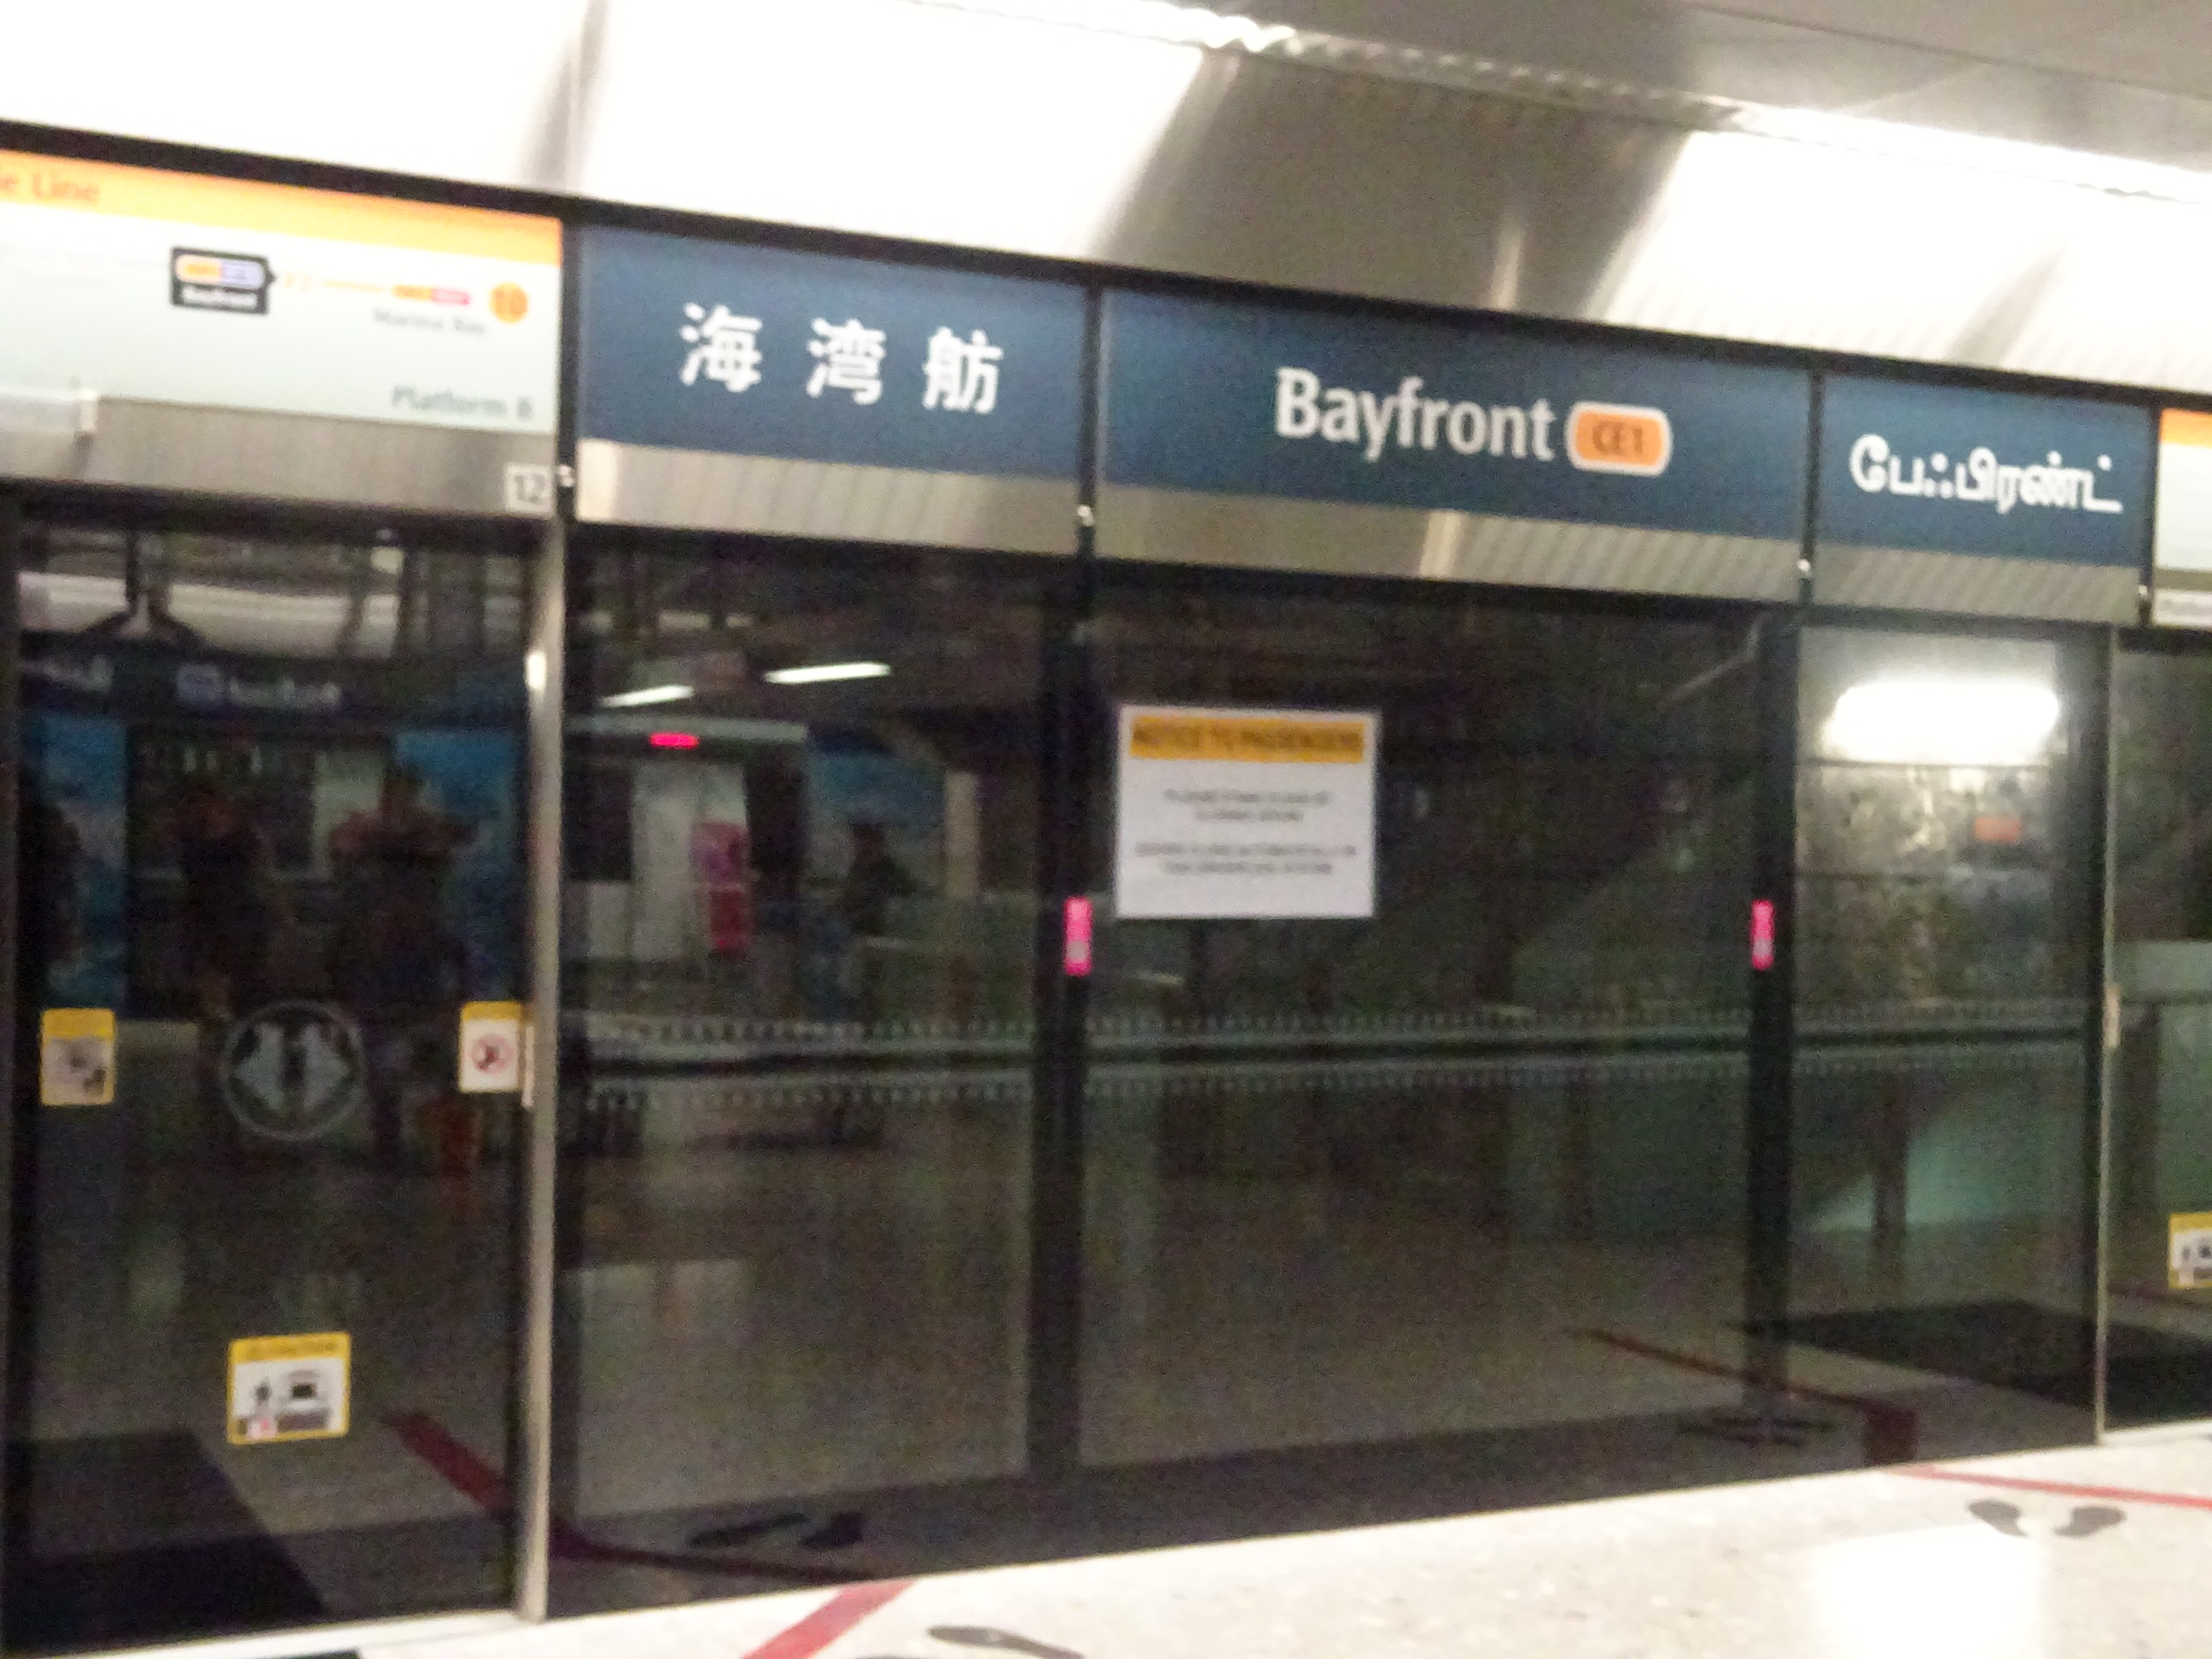 シンガポールの地下鉄の駅の案内表示